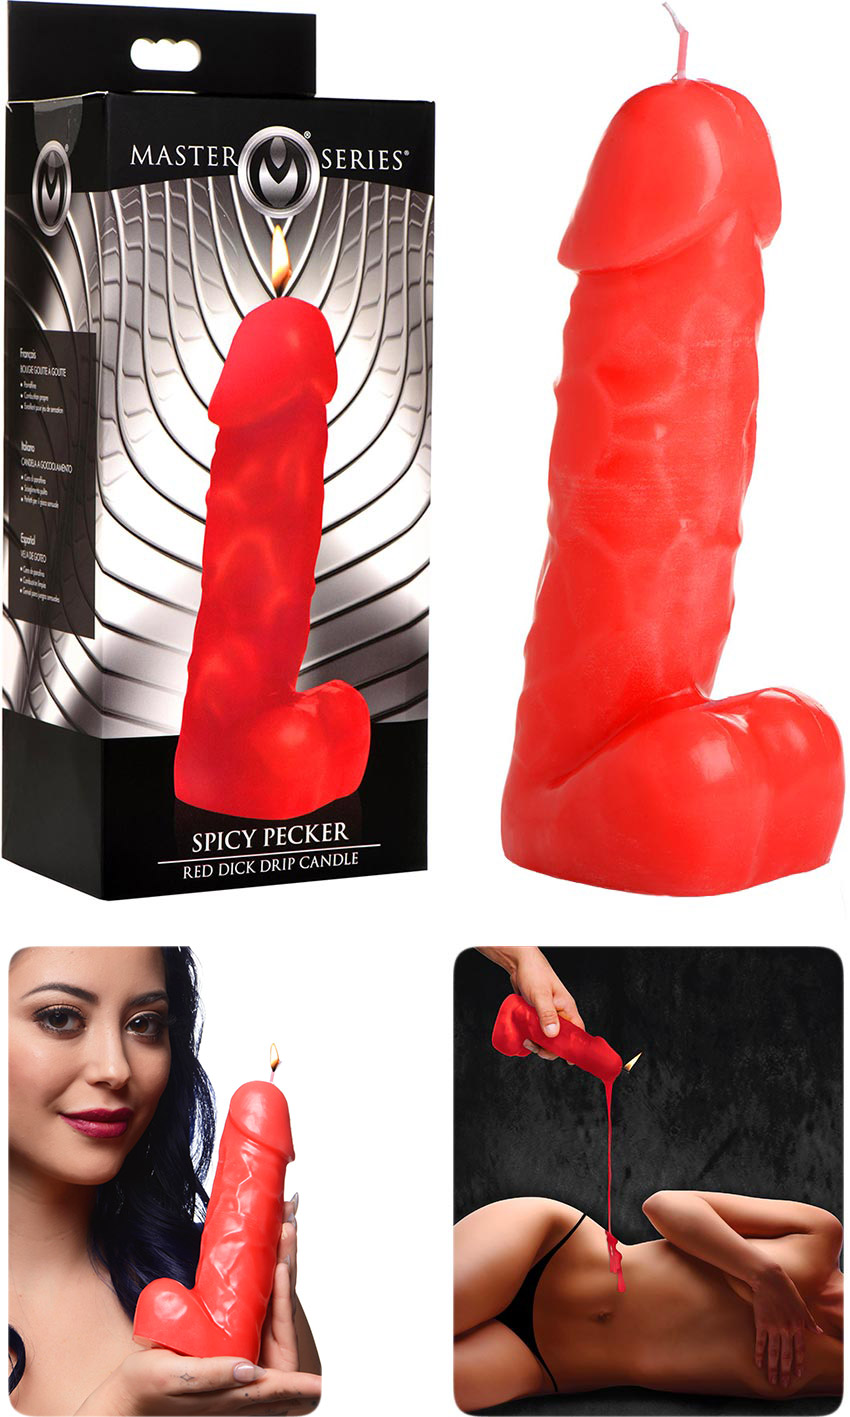 Bougie en forme de pénis pour jeux BDSM Master Series Spicy Pecker